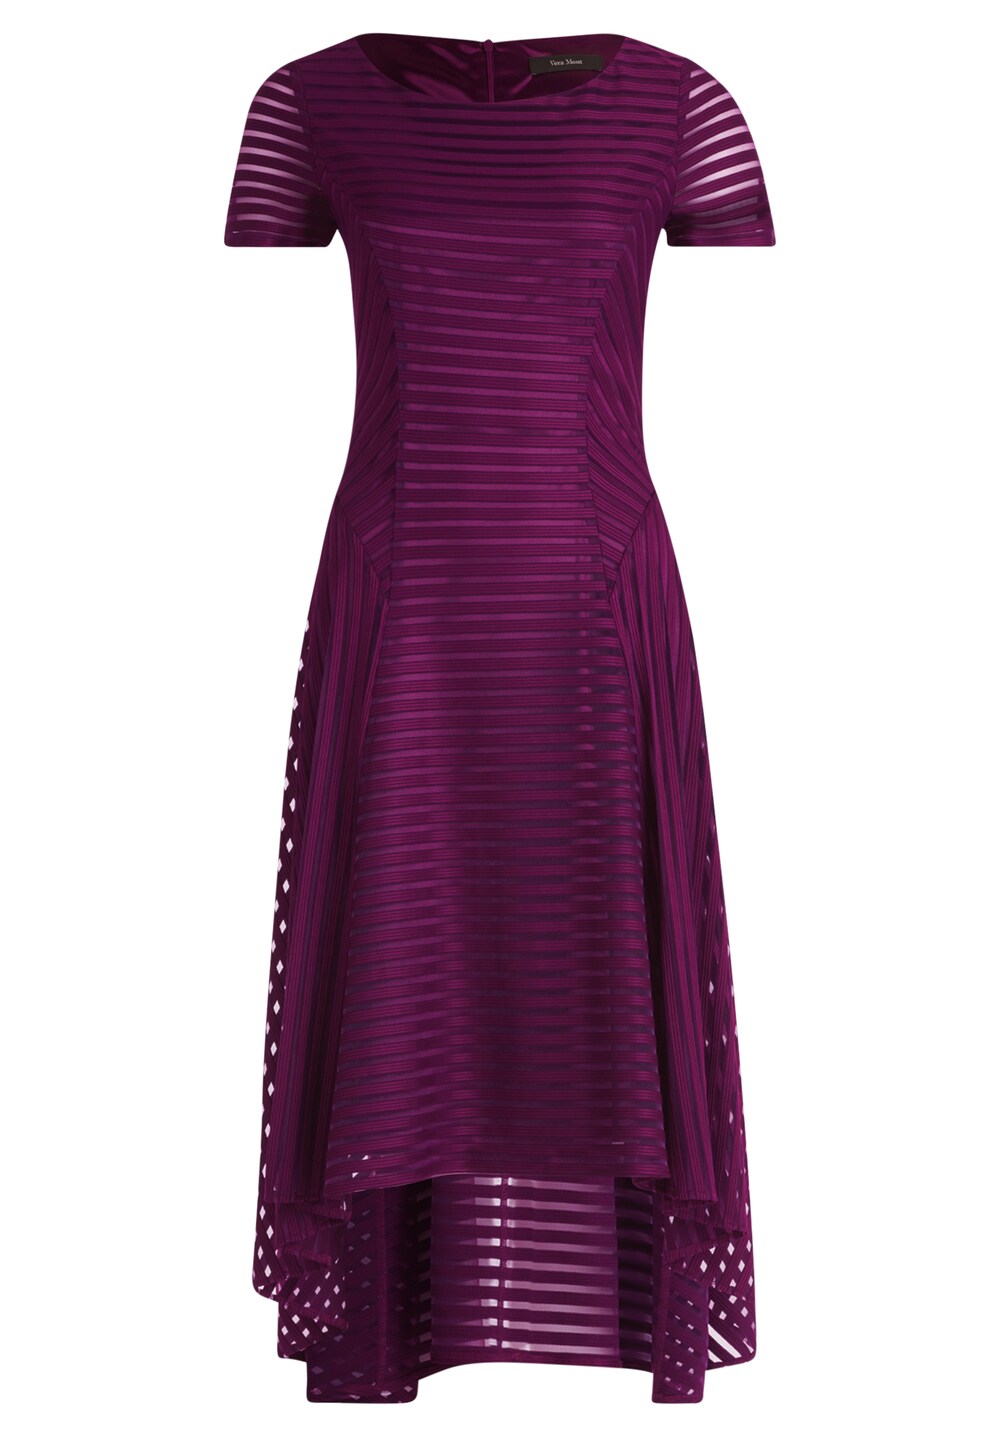 Коктейльное платье Vera Mont, фиолетовый